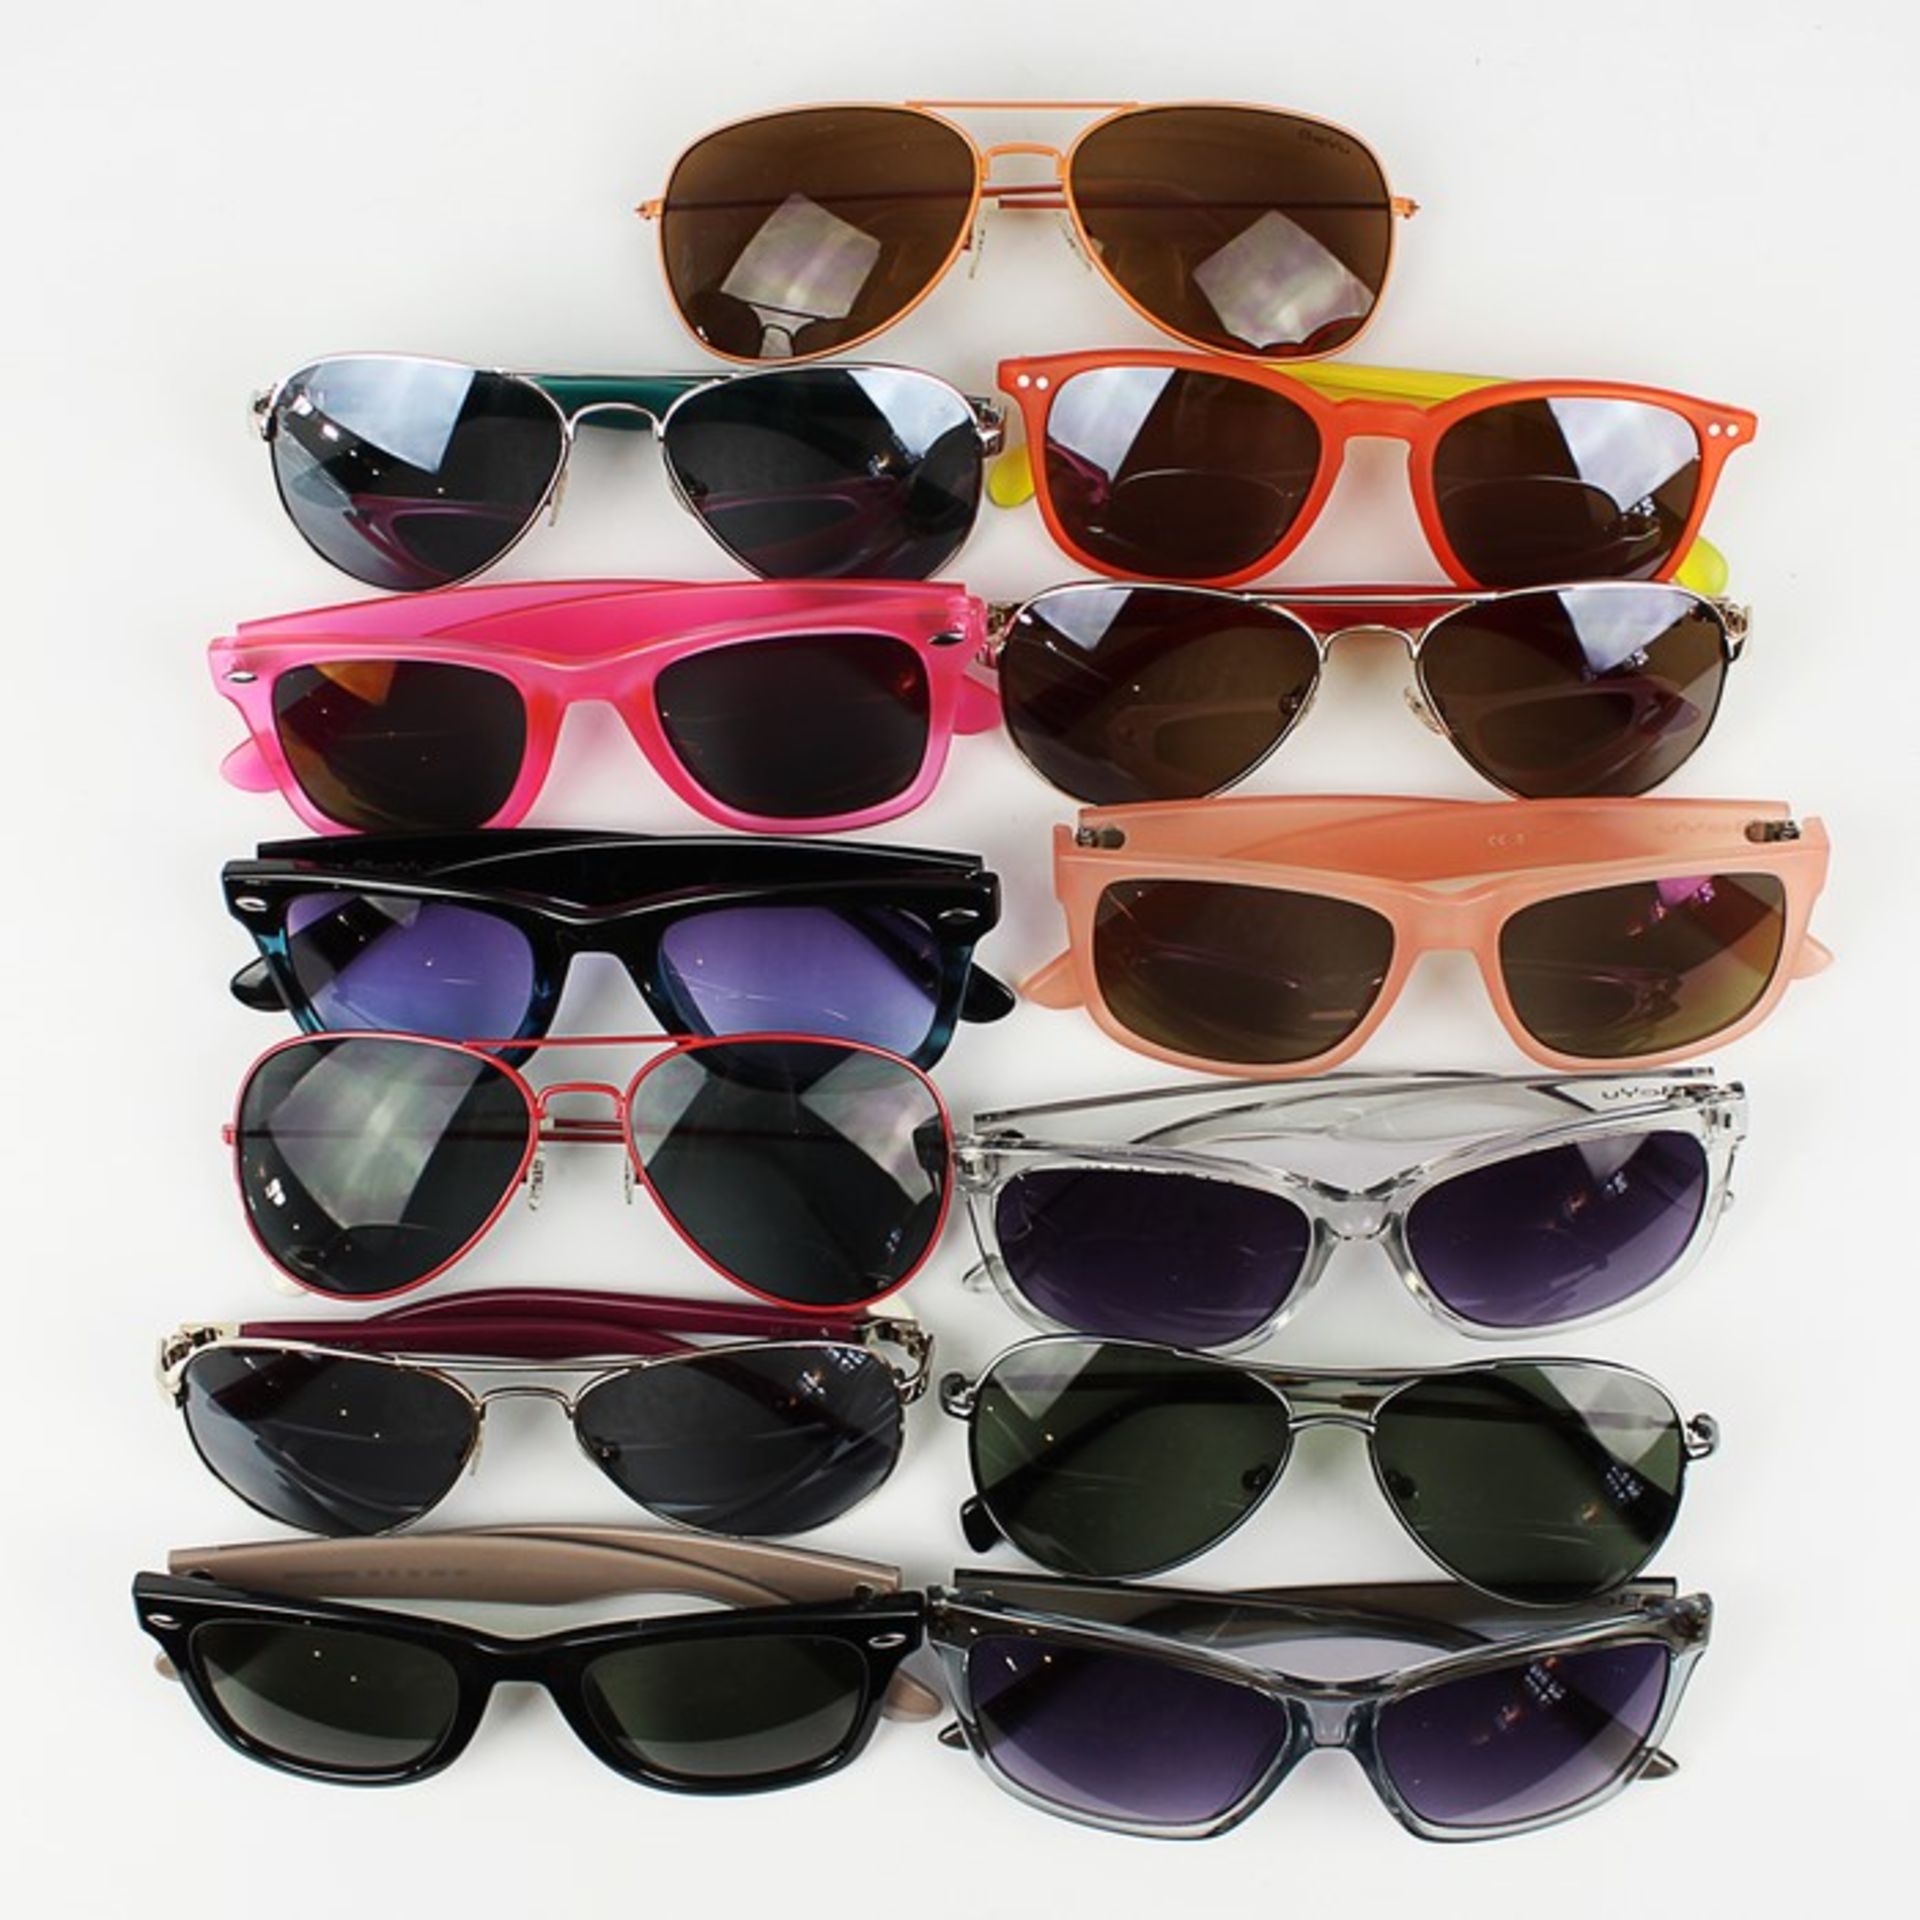 Sonnenbrillen13 versch. Modelle, Marke Beyu, Kunststoff, Metall, mit UV-Schutz, ungetragen